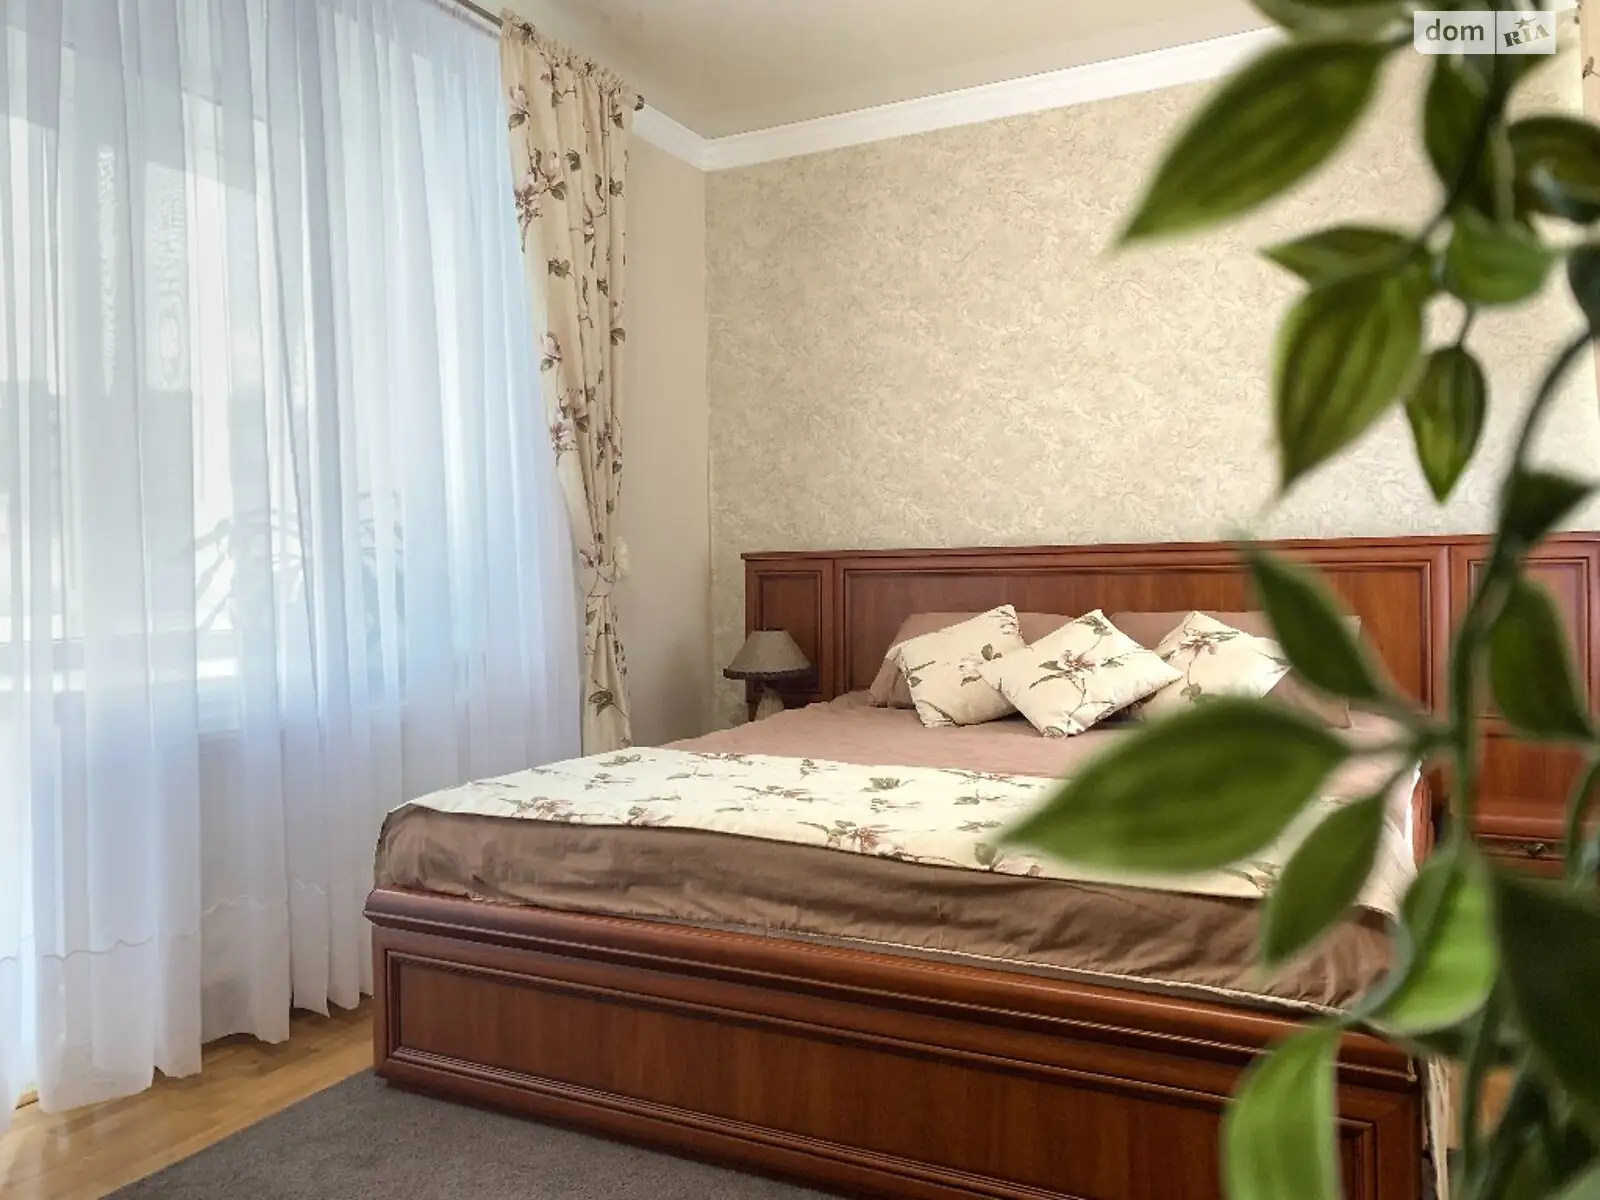 1-кімнатна квартира у Тернополі, цена: 956 грн